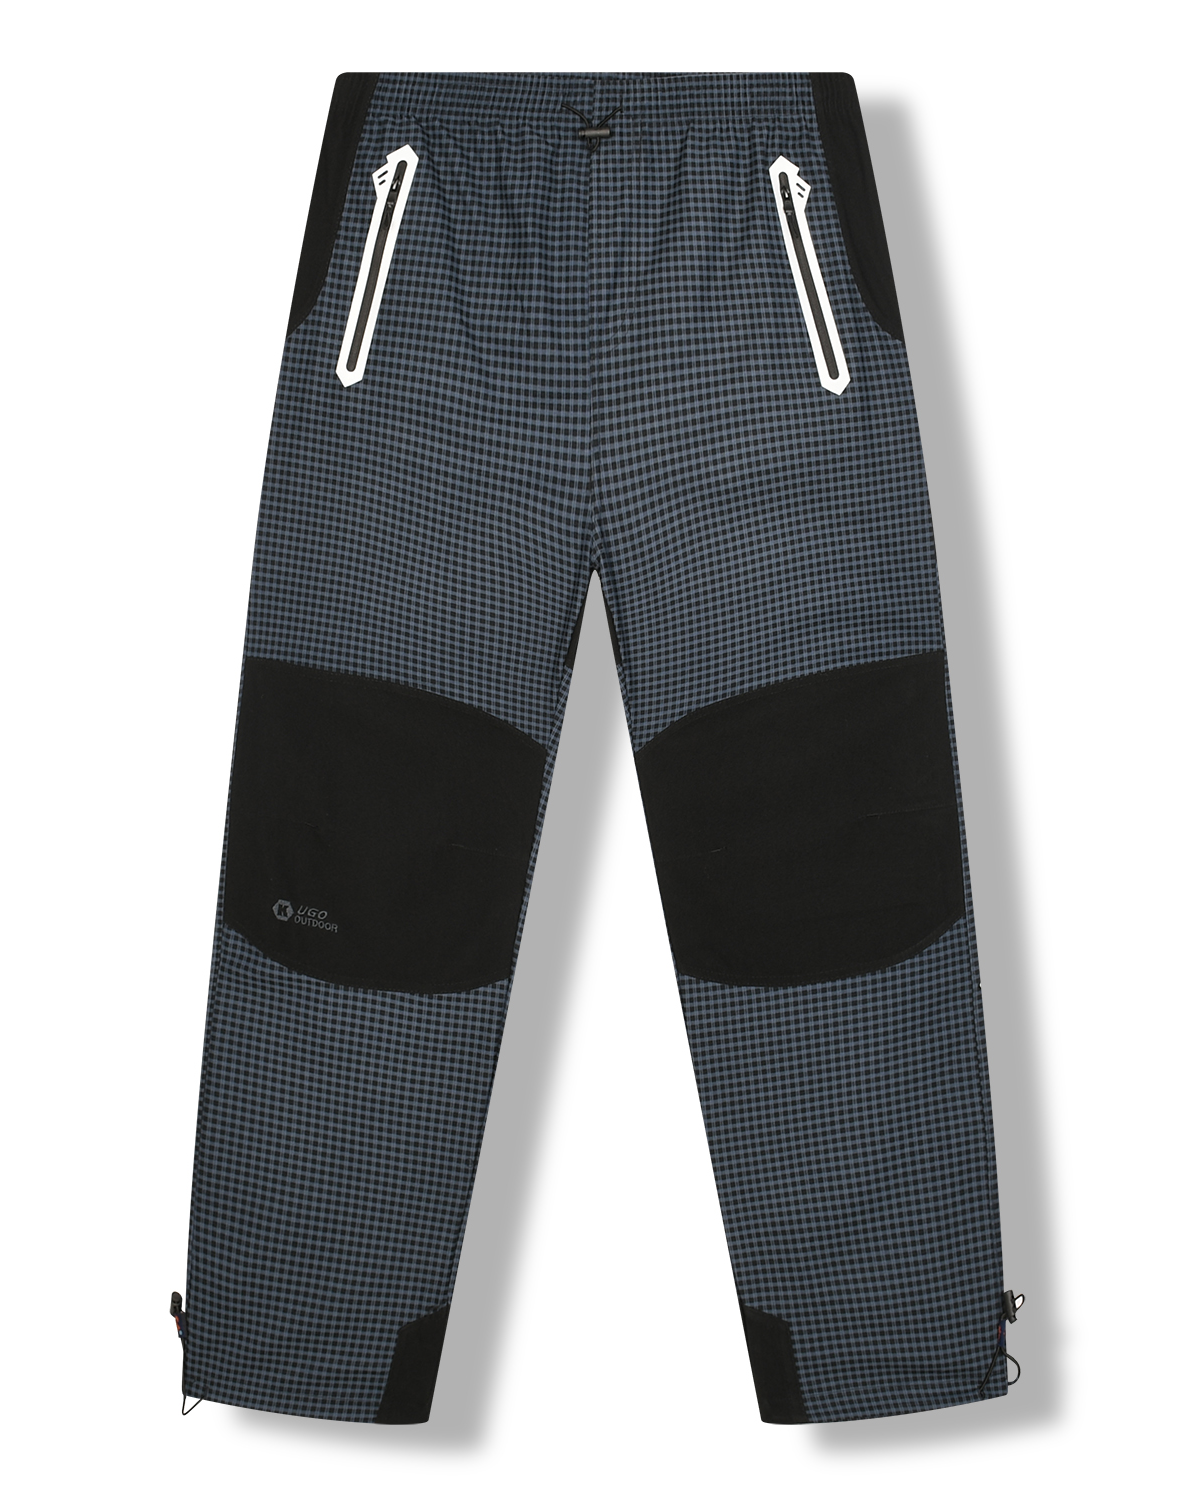 Pánské outdoorové kalhoty - KUGO G8555, šedomodrá Barva: Šedá, Velikost: L